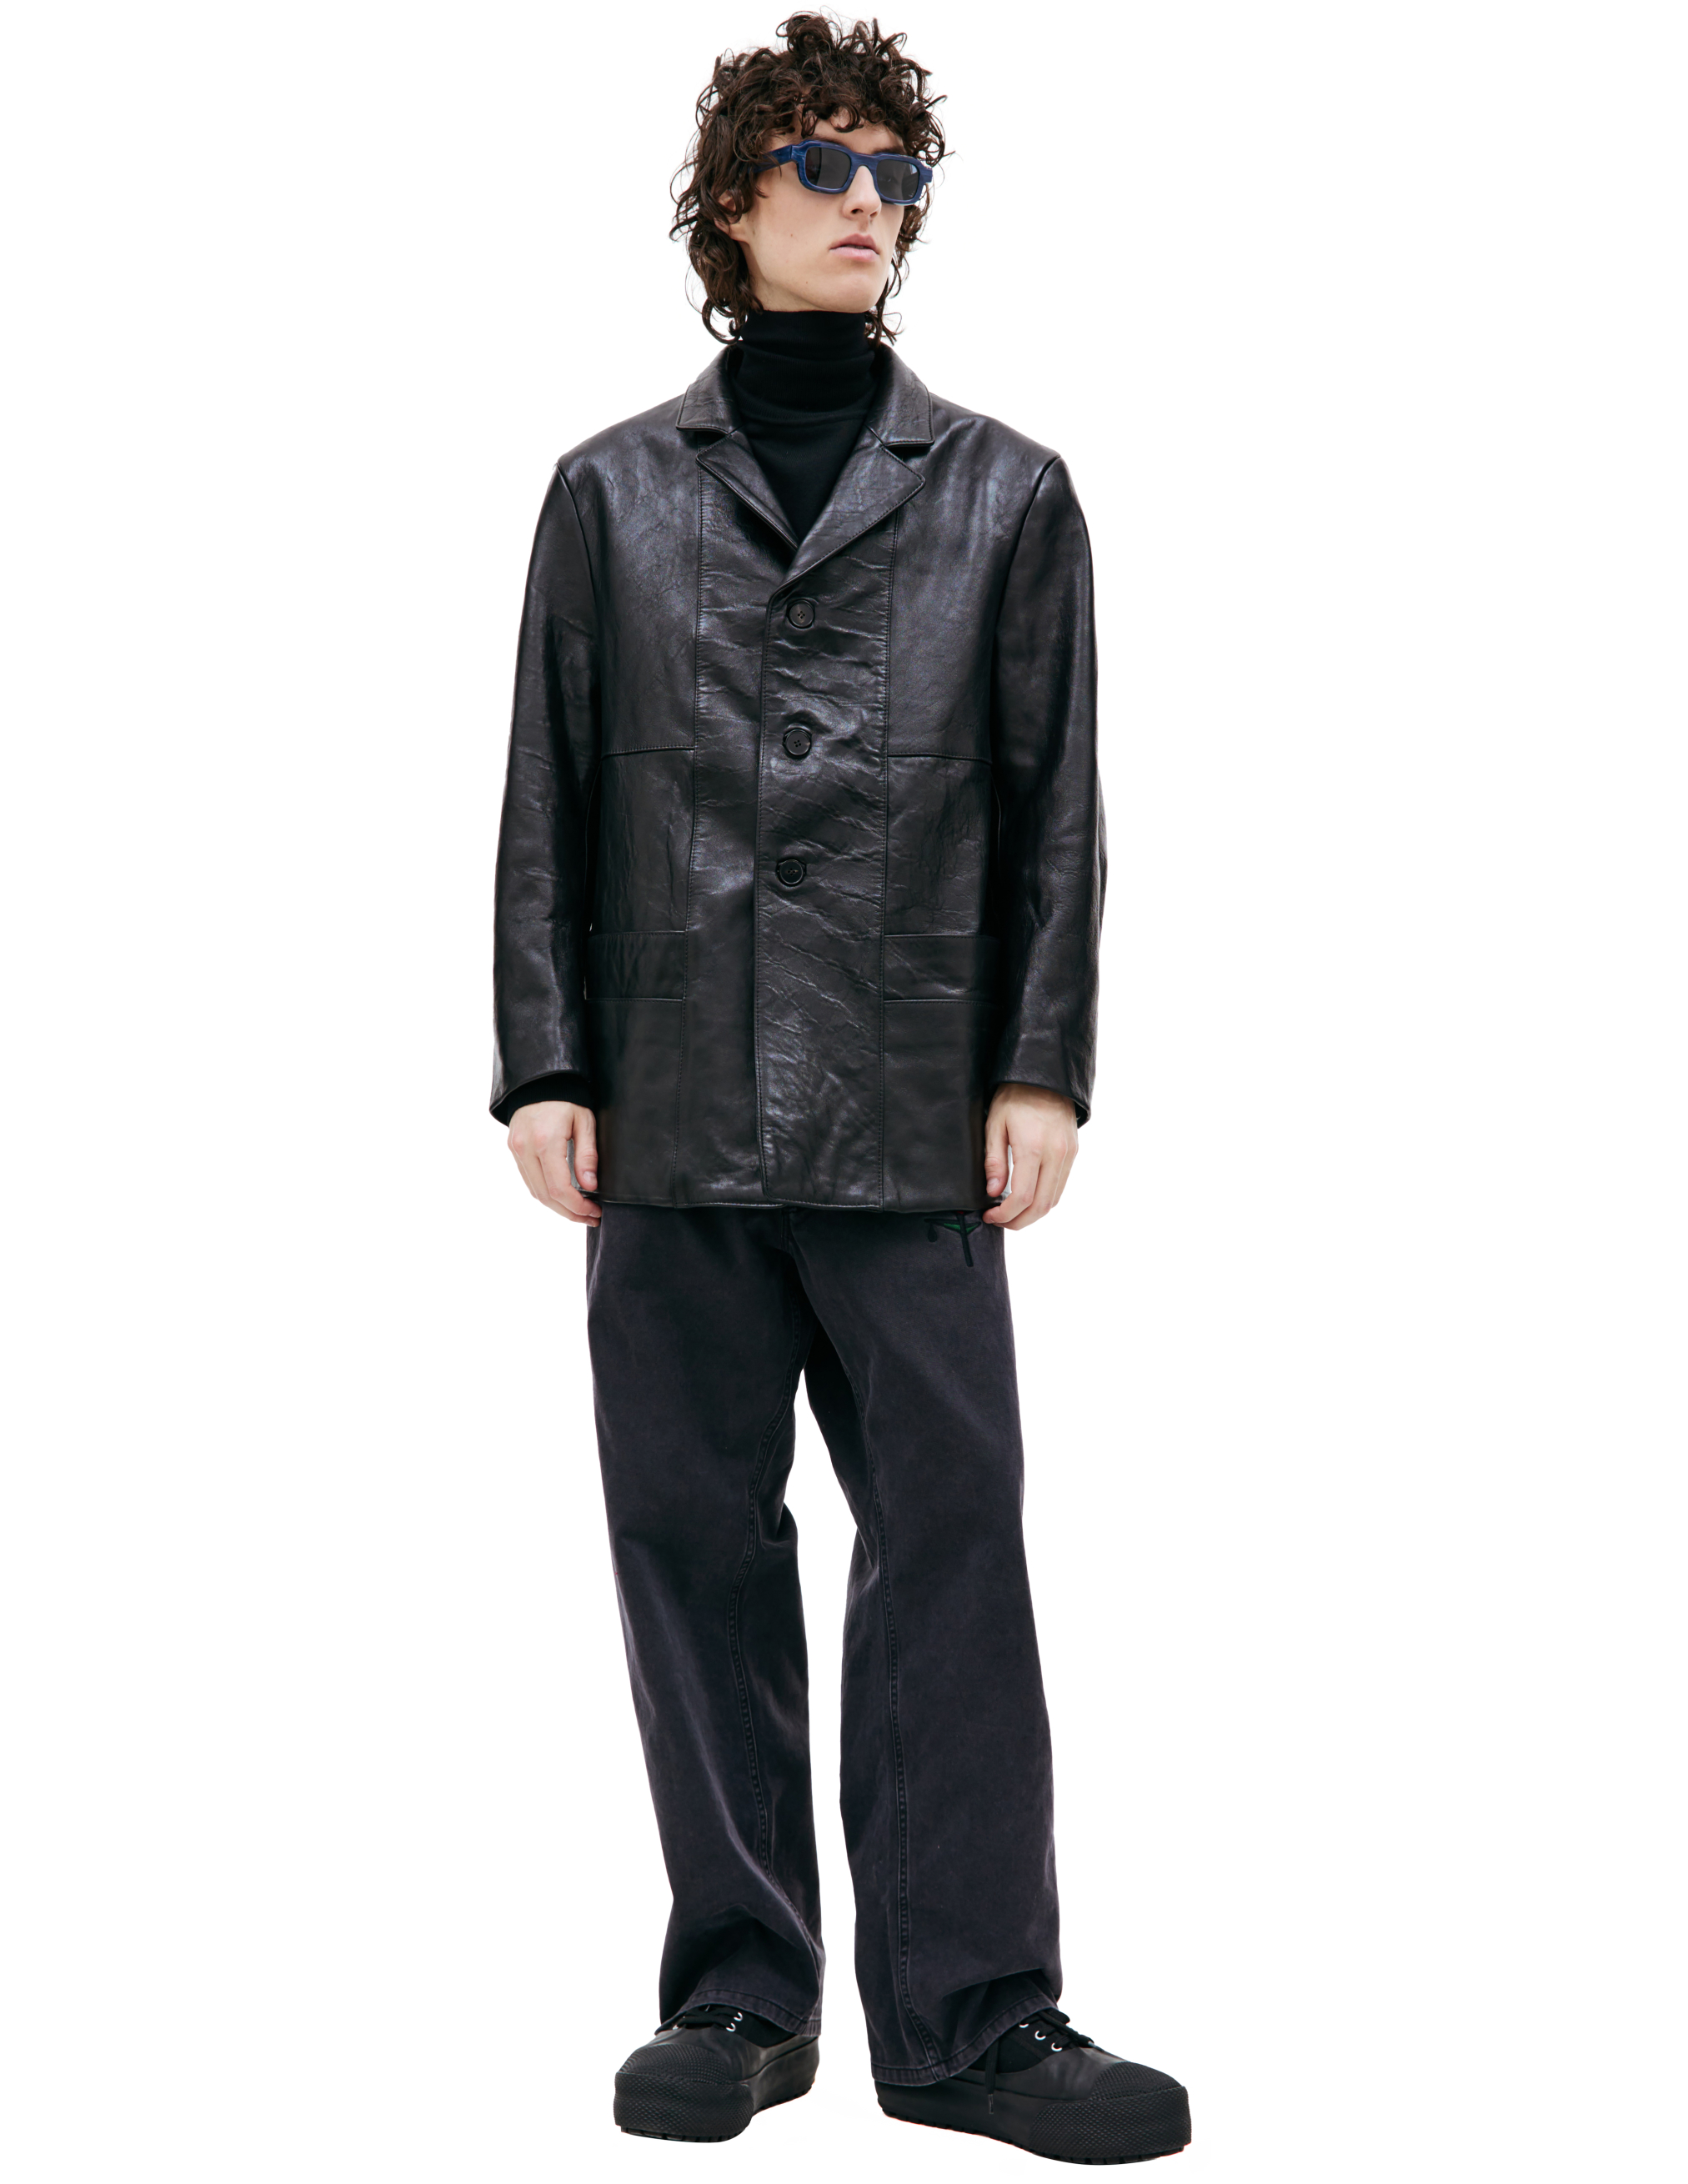 Черный кожаный пиджак Enfants Riches Deprimes 030-405, размер L;XL